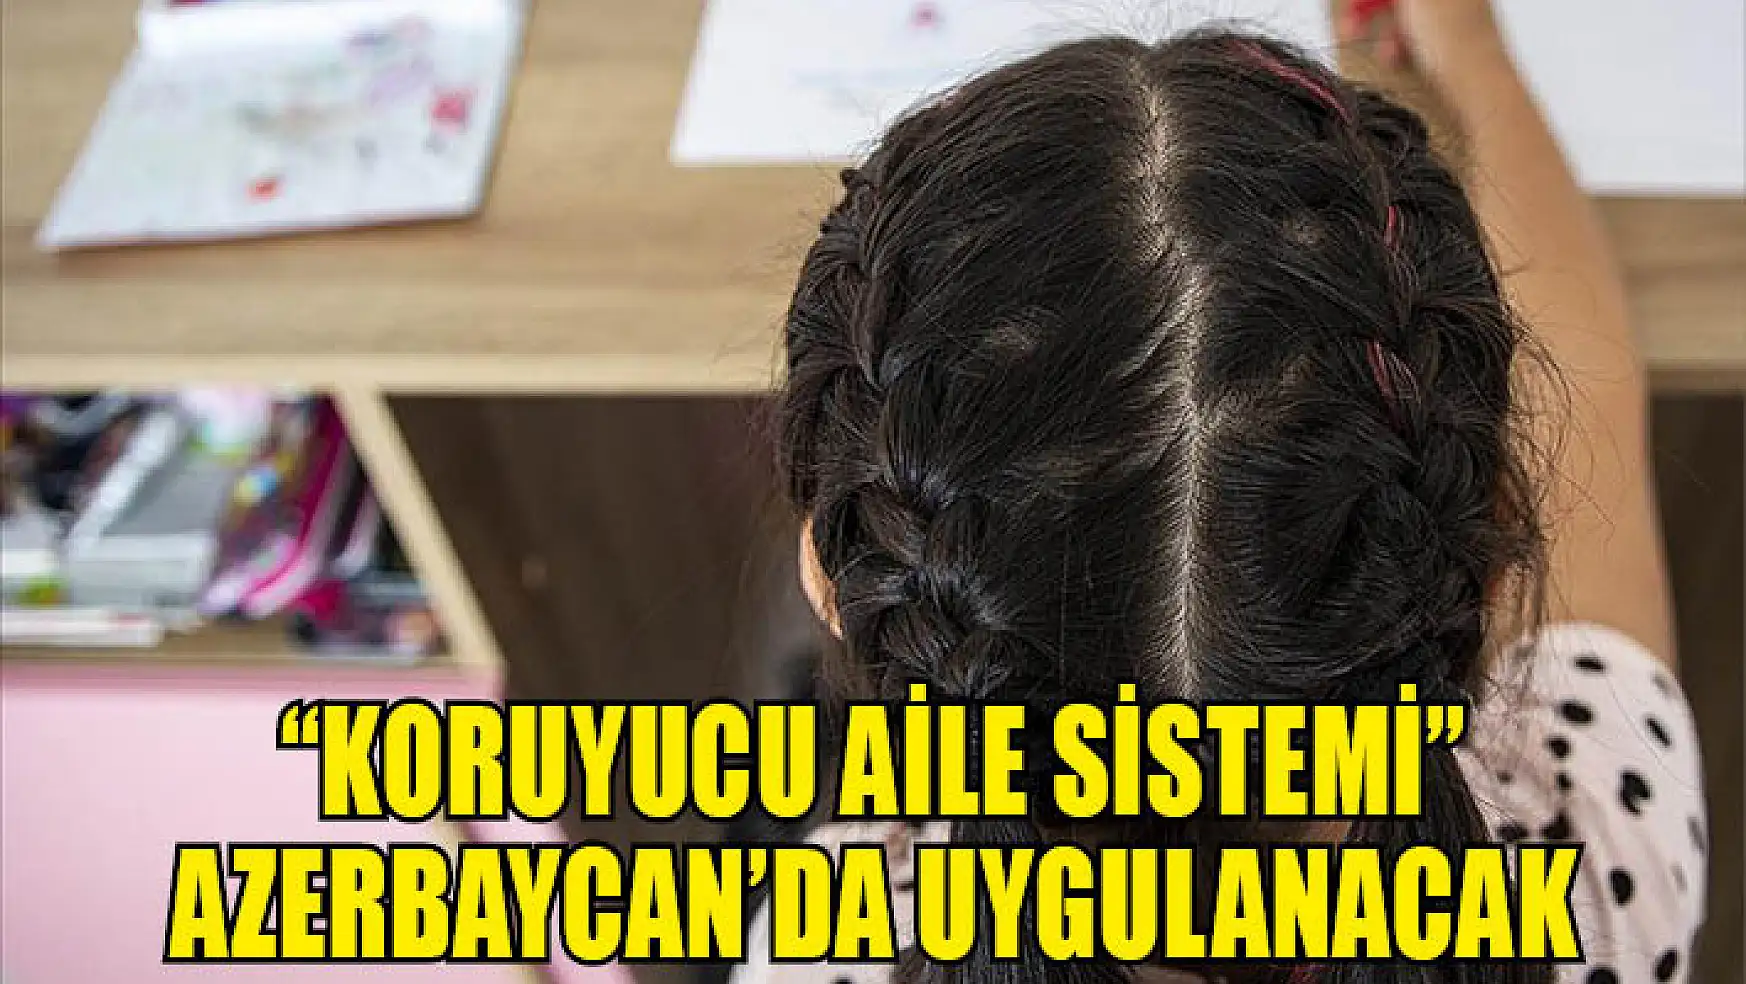 'Koruyucu Aile Sistemi' Azerbaycan'da uygulanacak